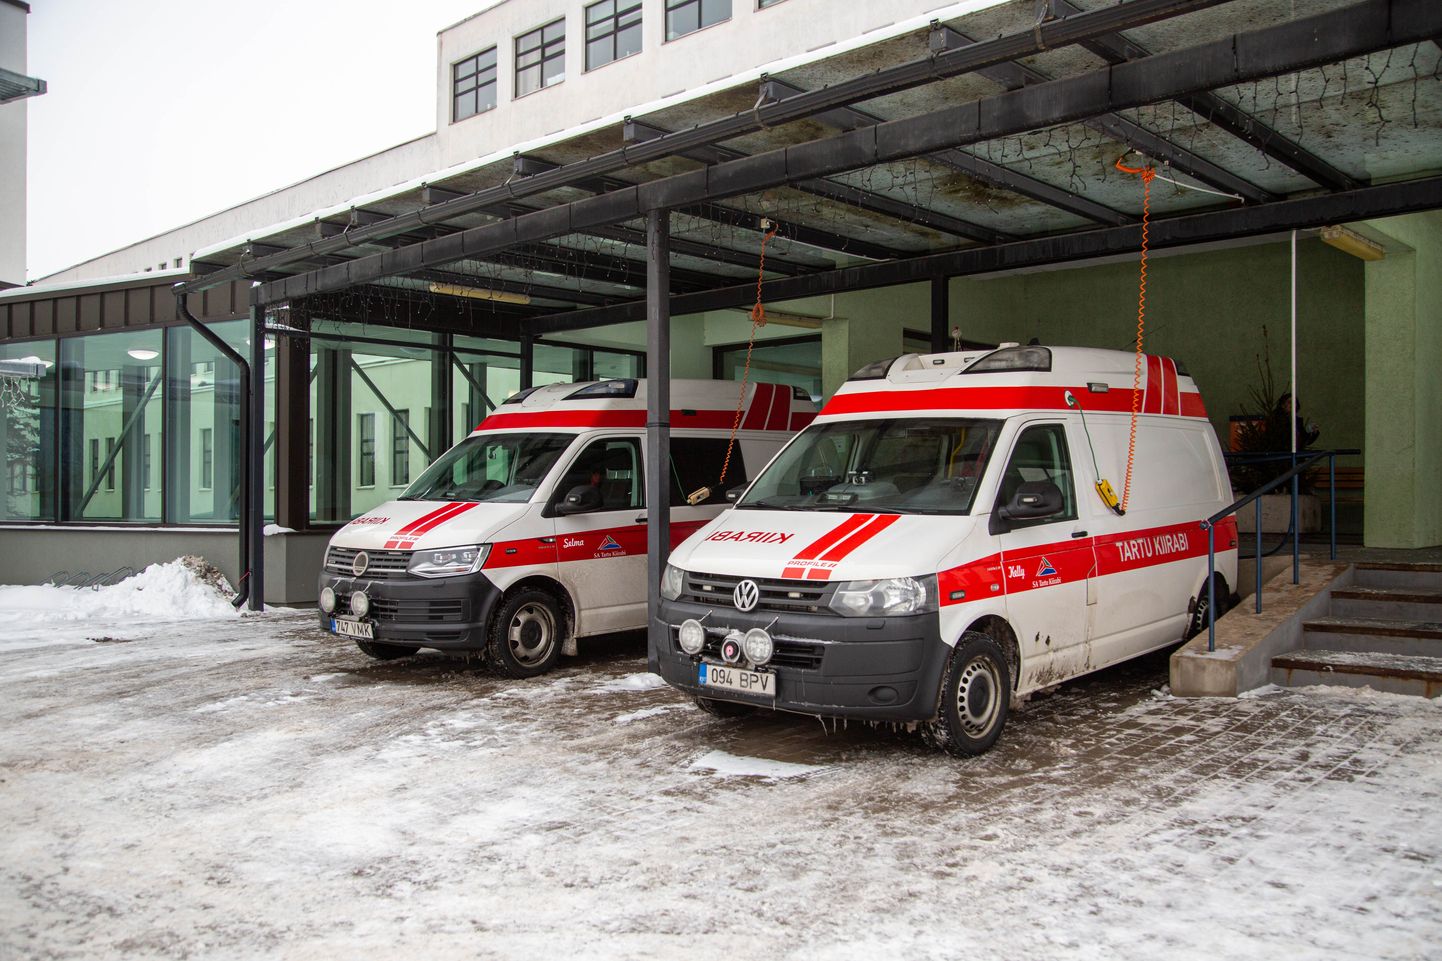 24.01.2022, Põlva
Põlva haigla ees seisvad kiirabi autod

Foto: Arvo Meeks / Lõuna-Eesti Postimees